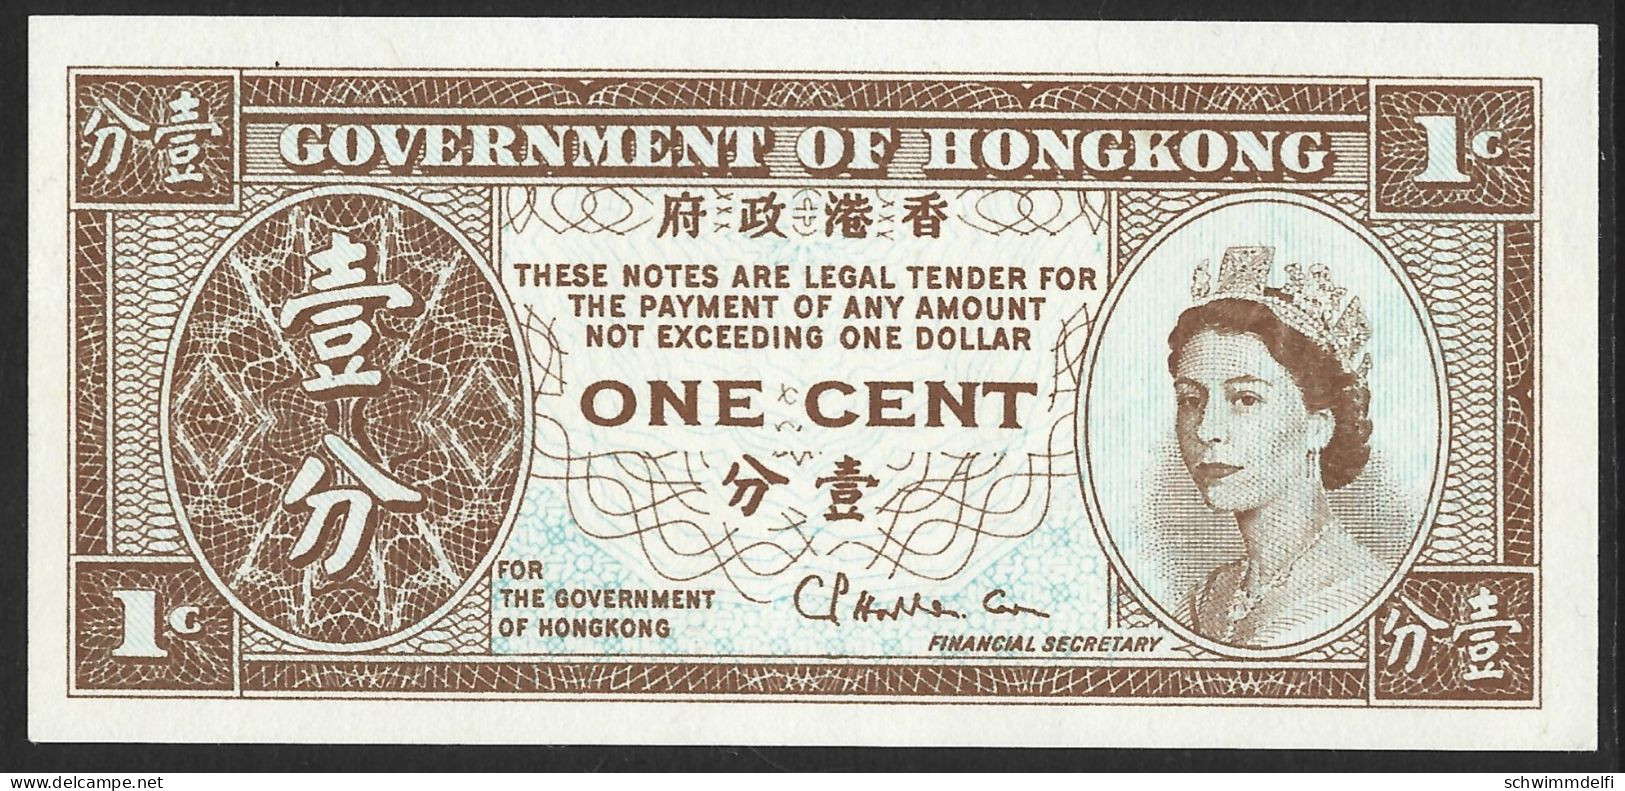 HONGKONG - HONG KONG - 1 CENT 1961 - 71 - PICK: 325 - PAPEL - IMPRIMIR DE UN LADO - SIN CIRCULAR - UNZIRKULIERT - Hong Kong